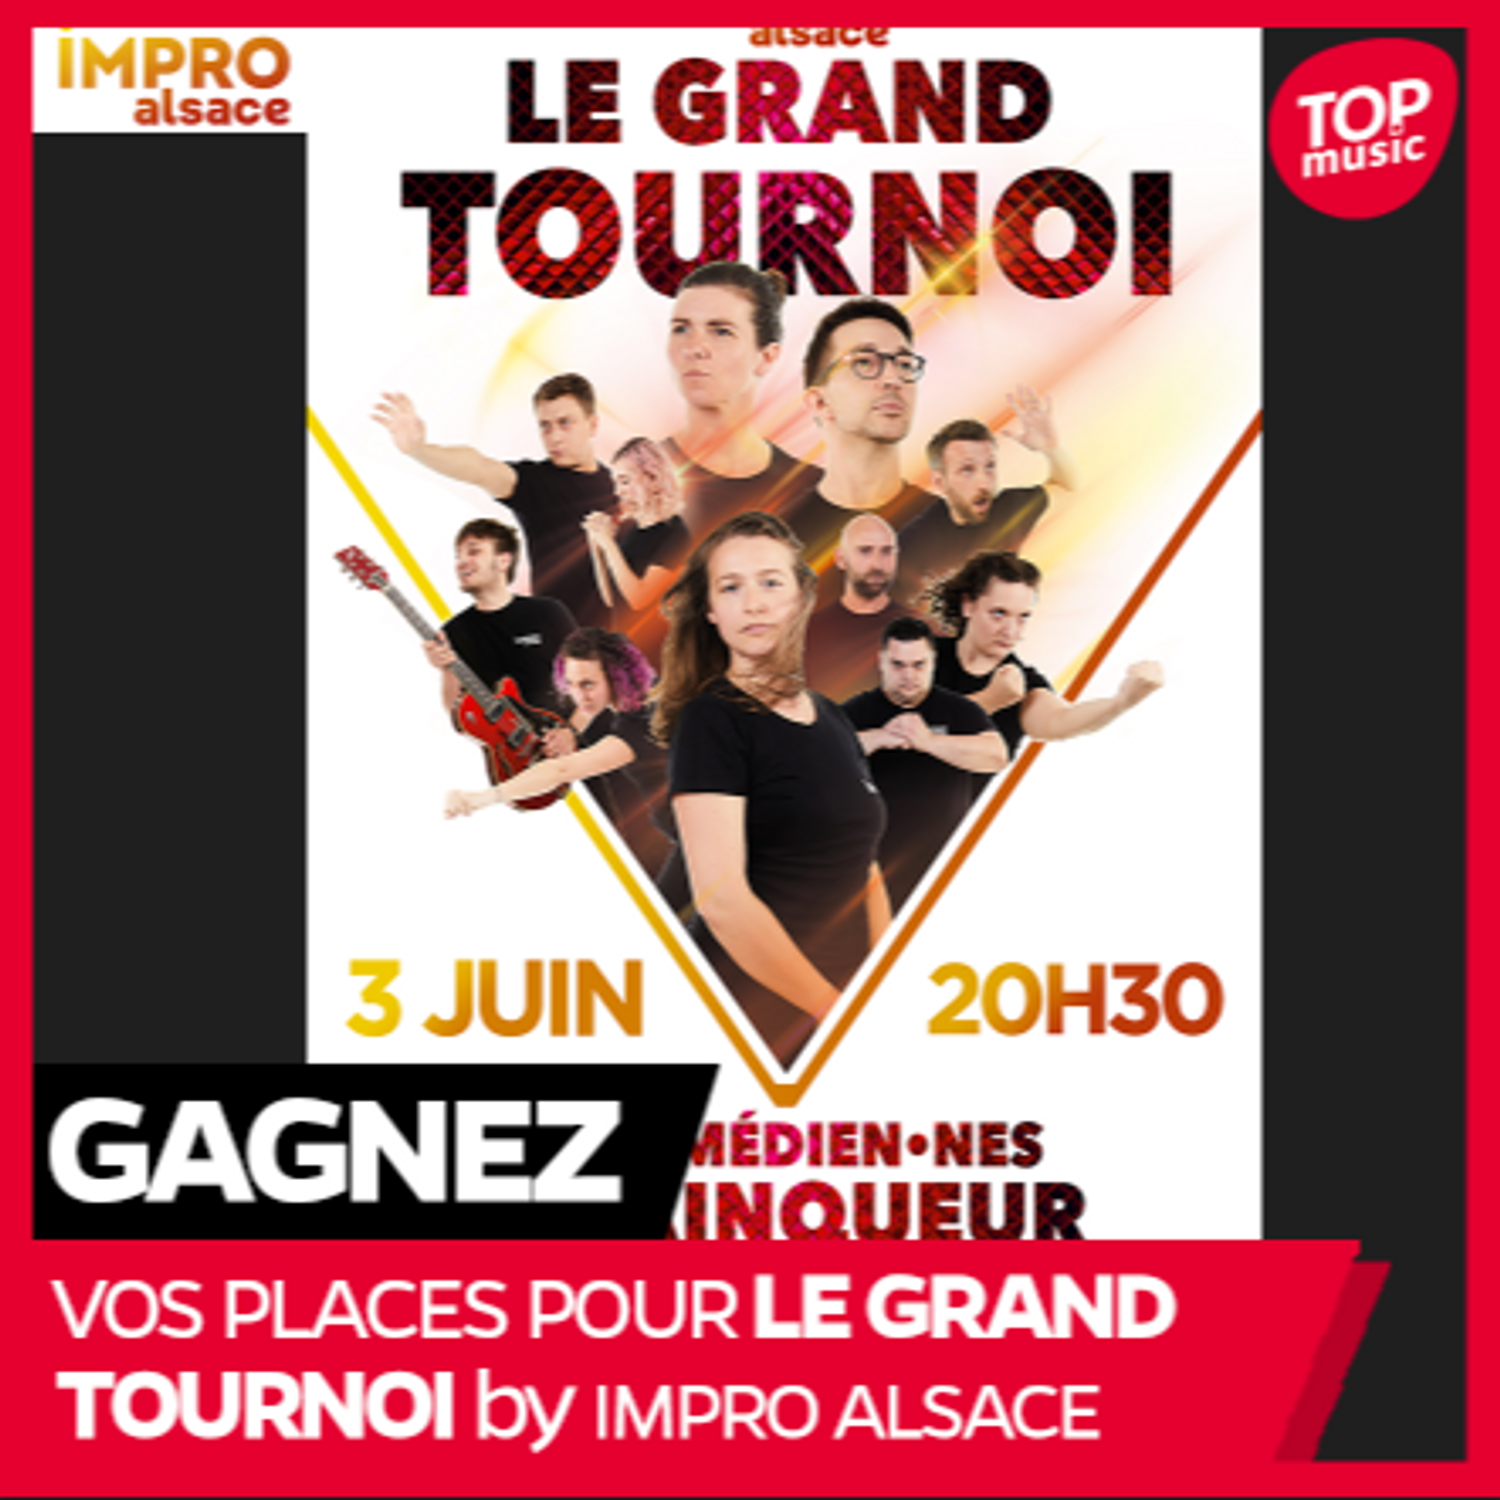 Vos places pour le Grand Tournoi by Impro Alsace !